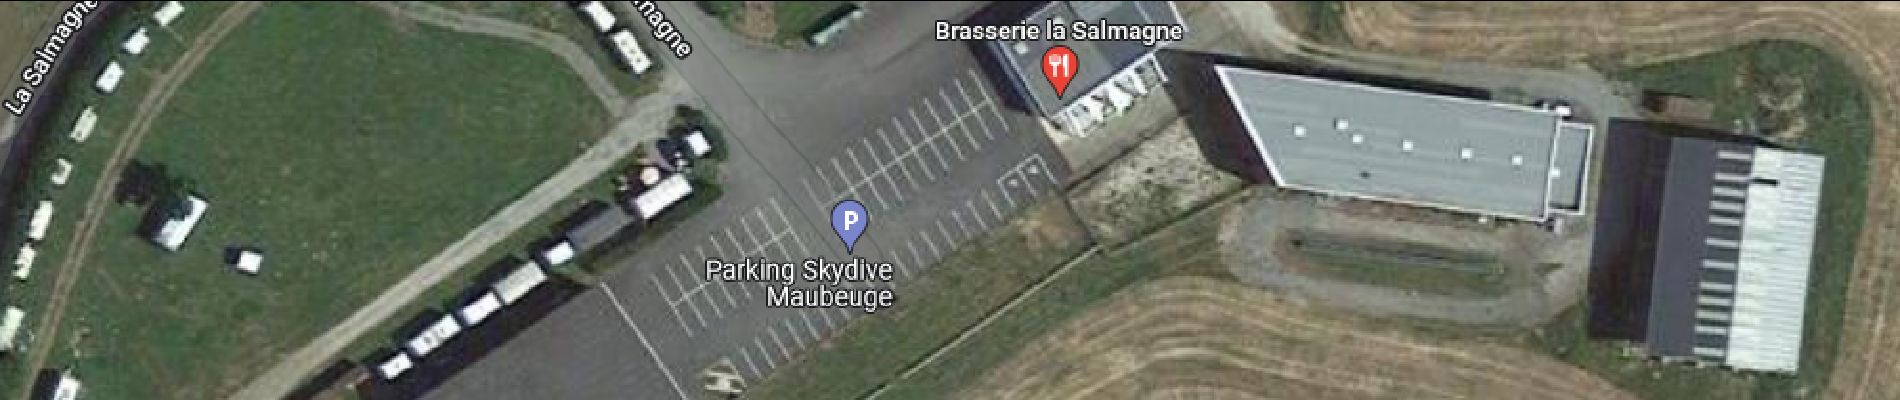 Point d'intérêt Vieux-Reng - Brasserie de l'aérodrome de la Salmagne - Photo